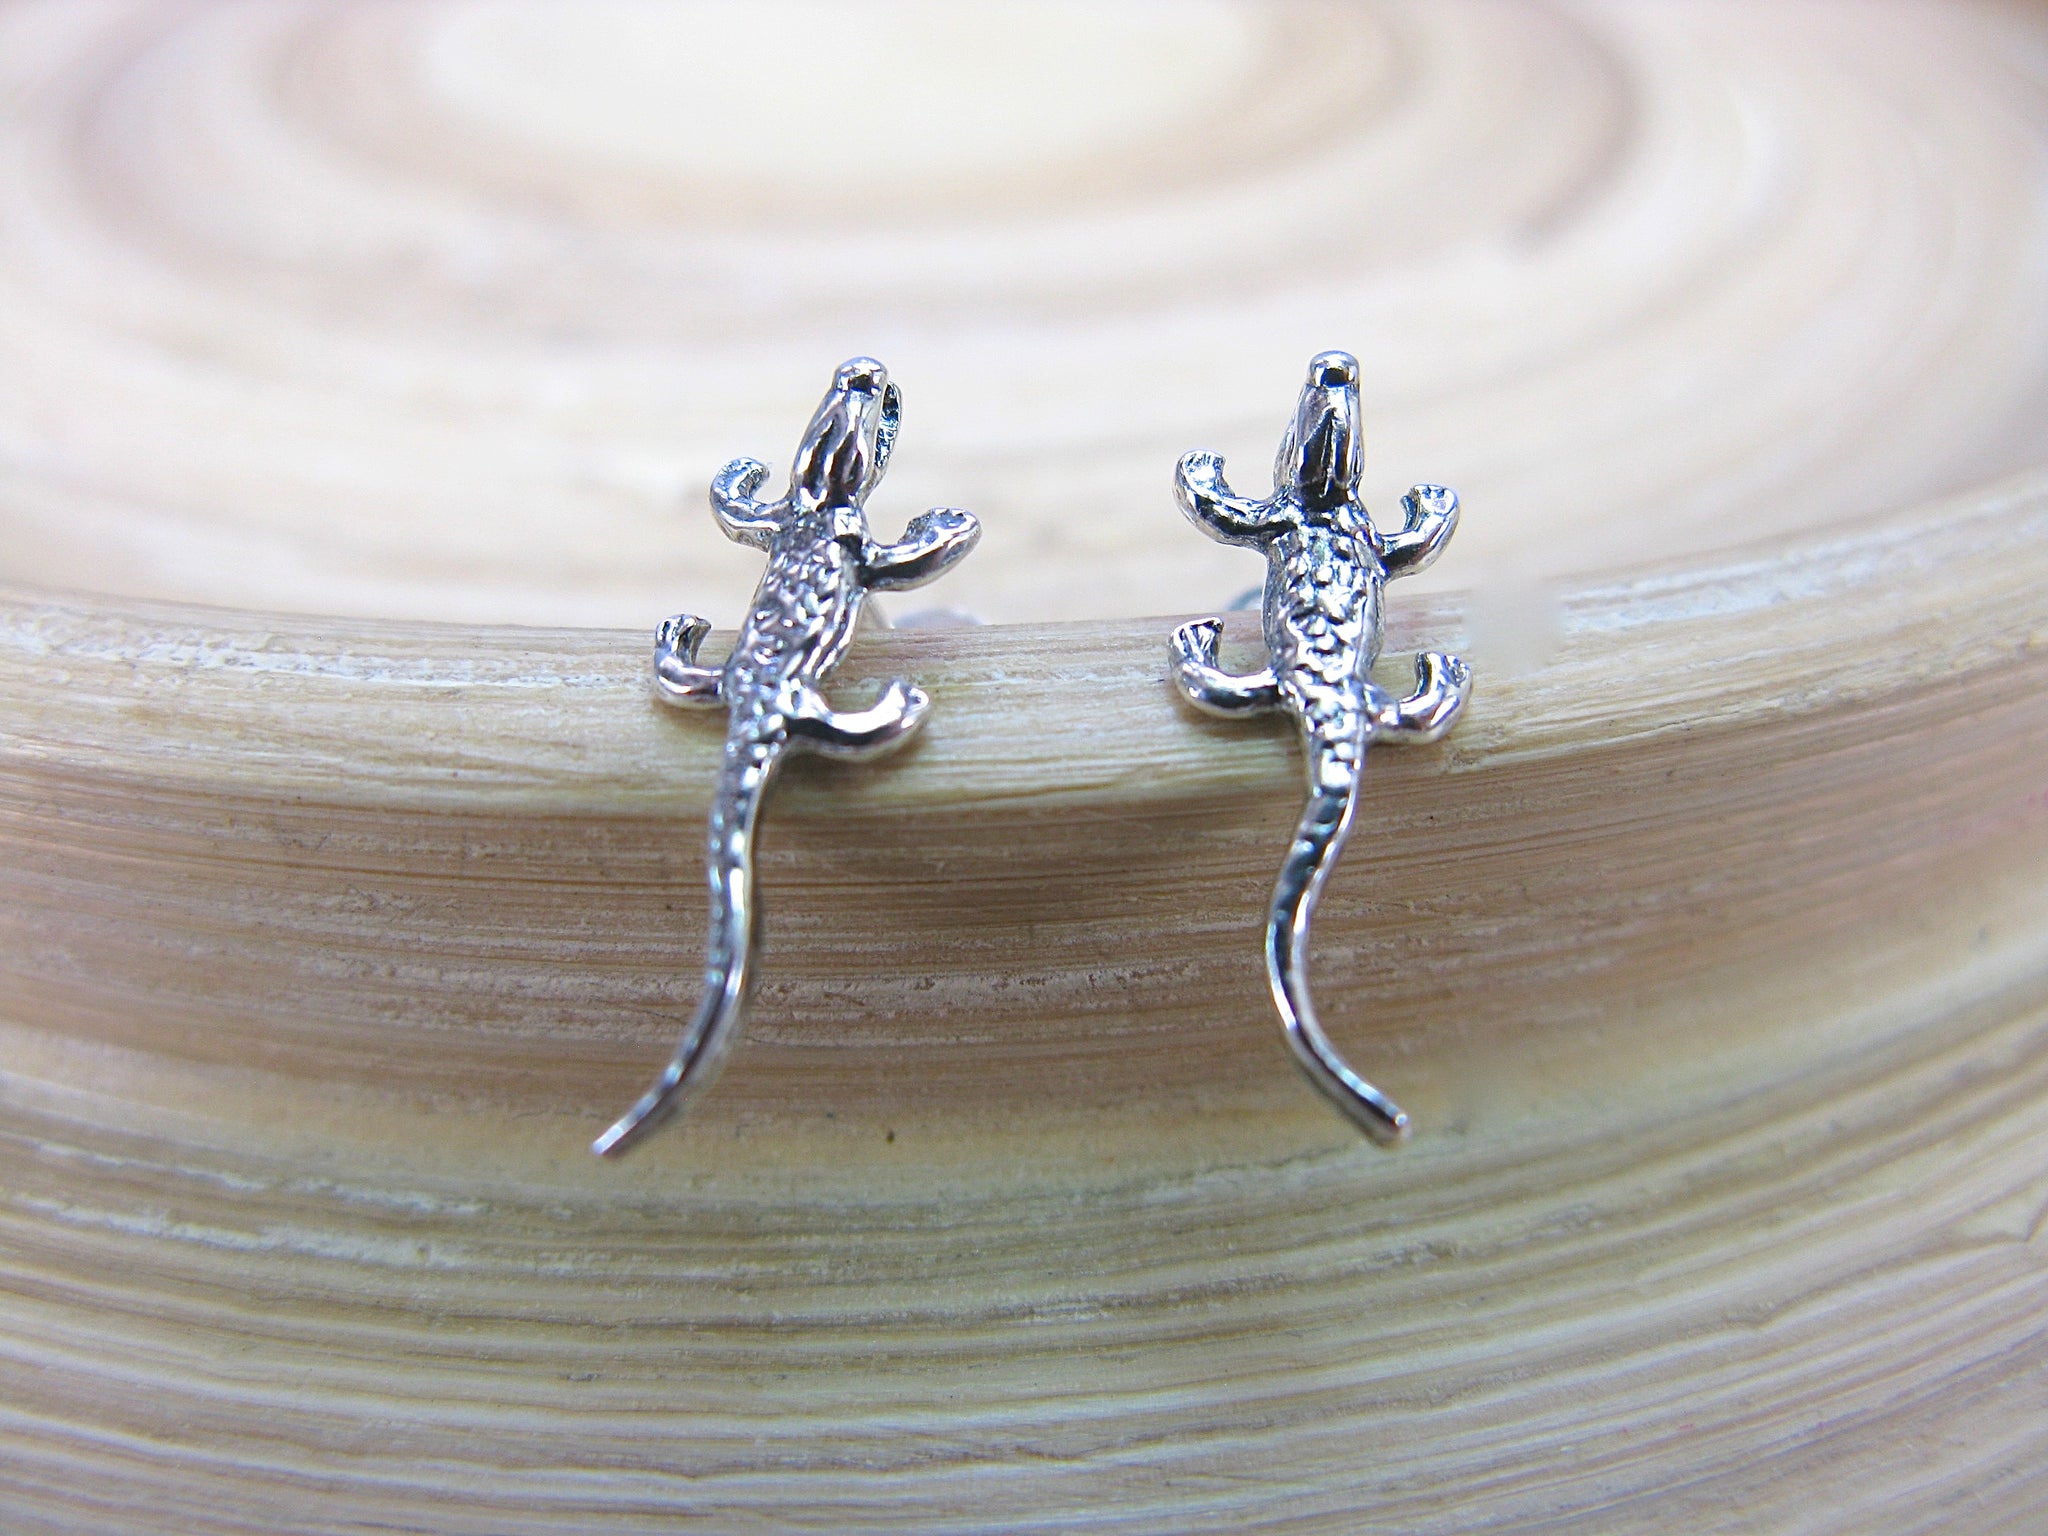 Lizard Stud Earrings in 925 Sterling Silver